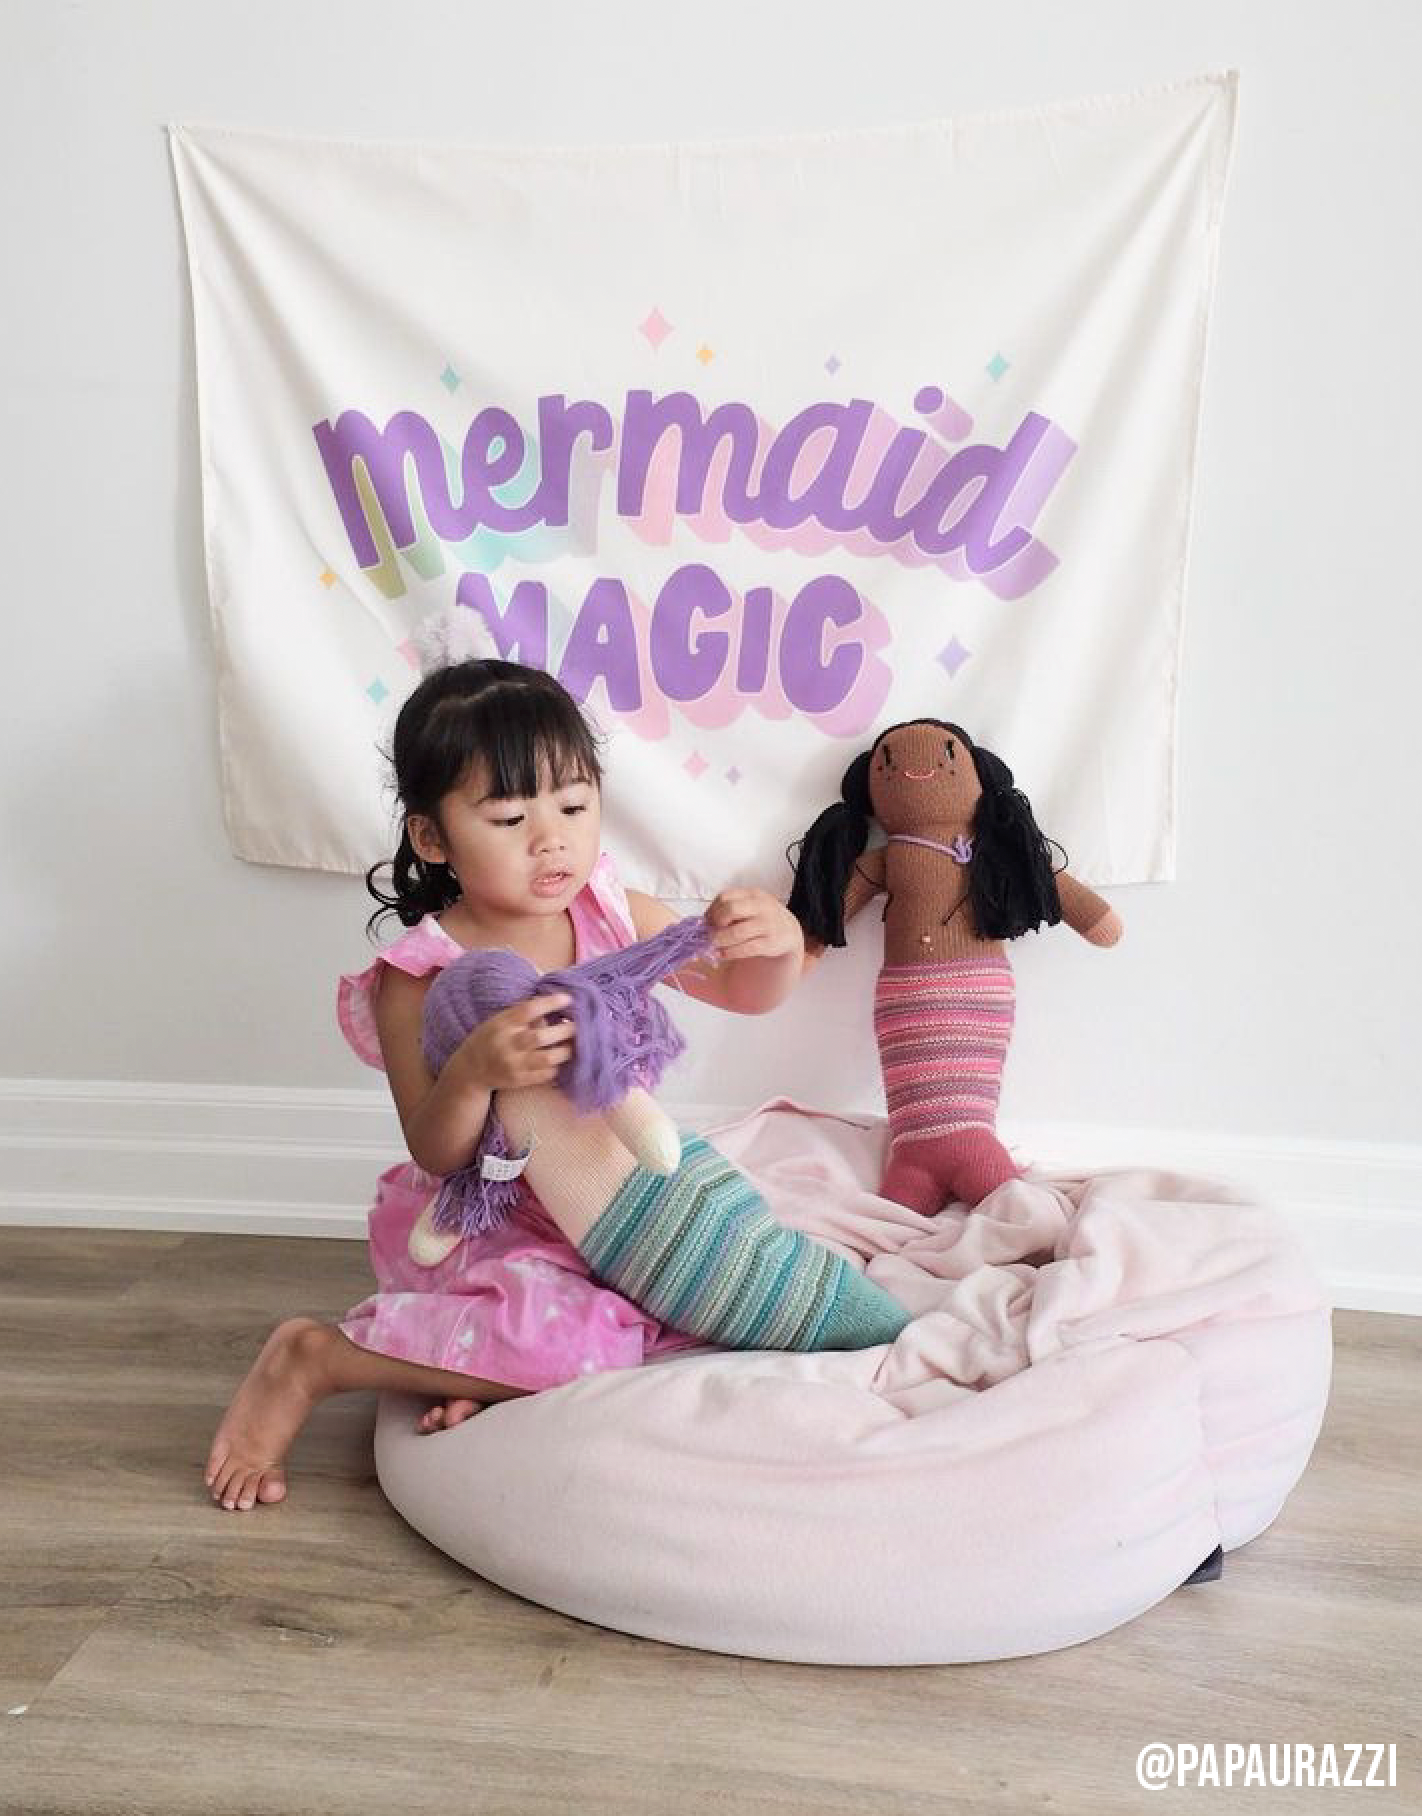 Mermaid Magic Banner